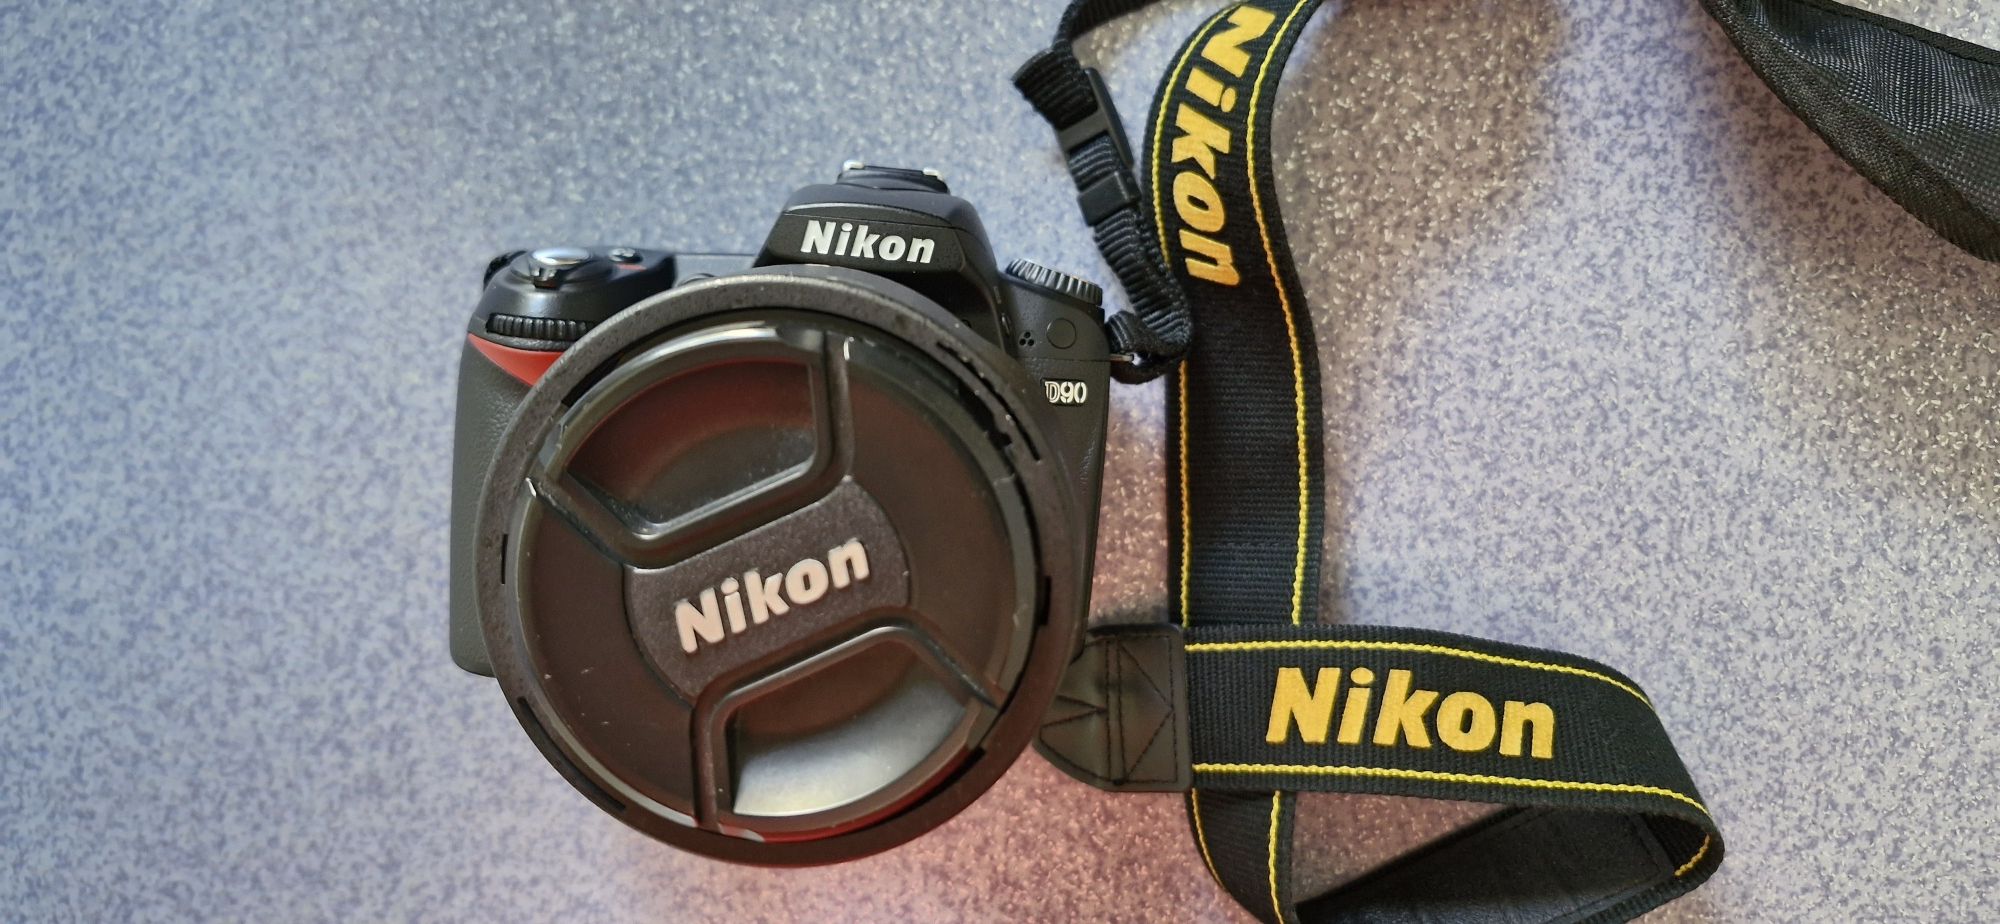 Nikon D90 aproape nouă